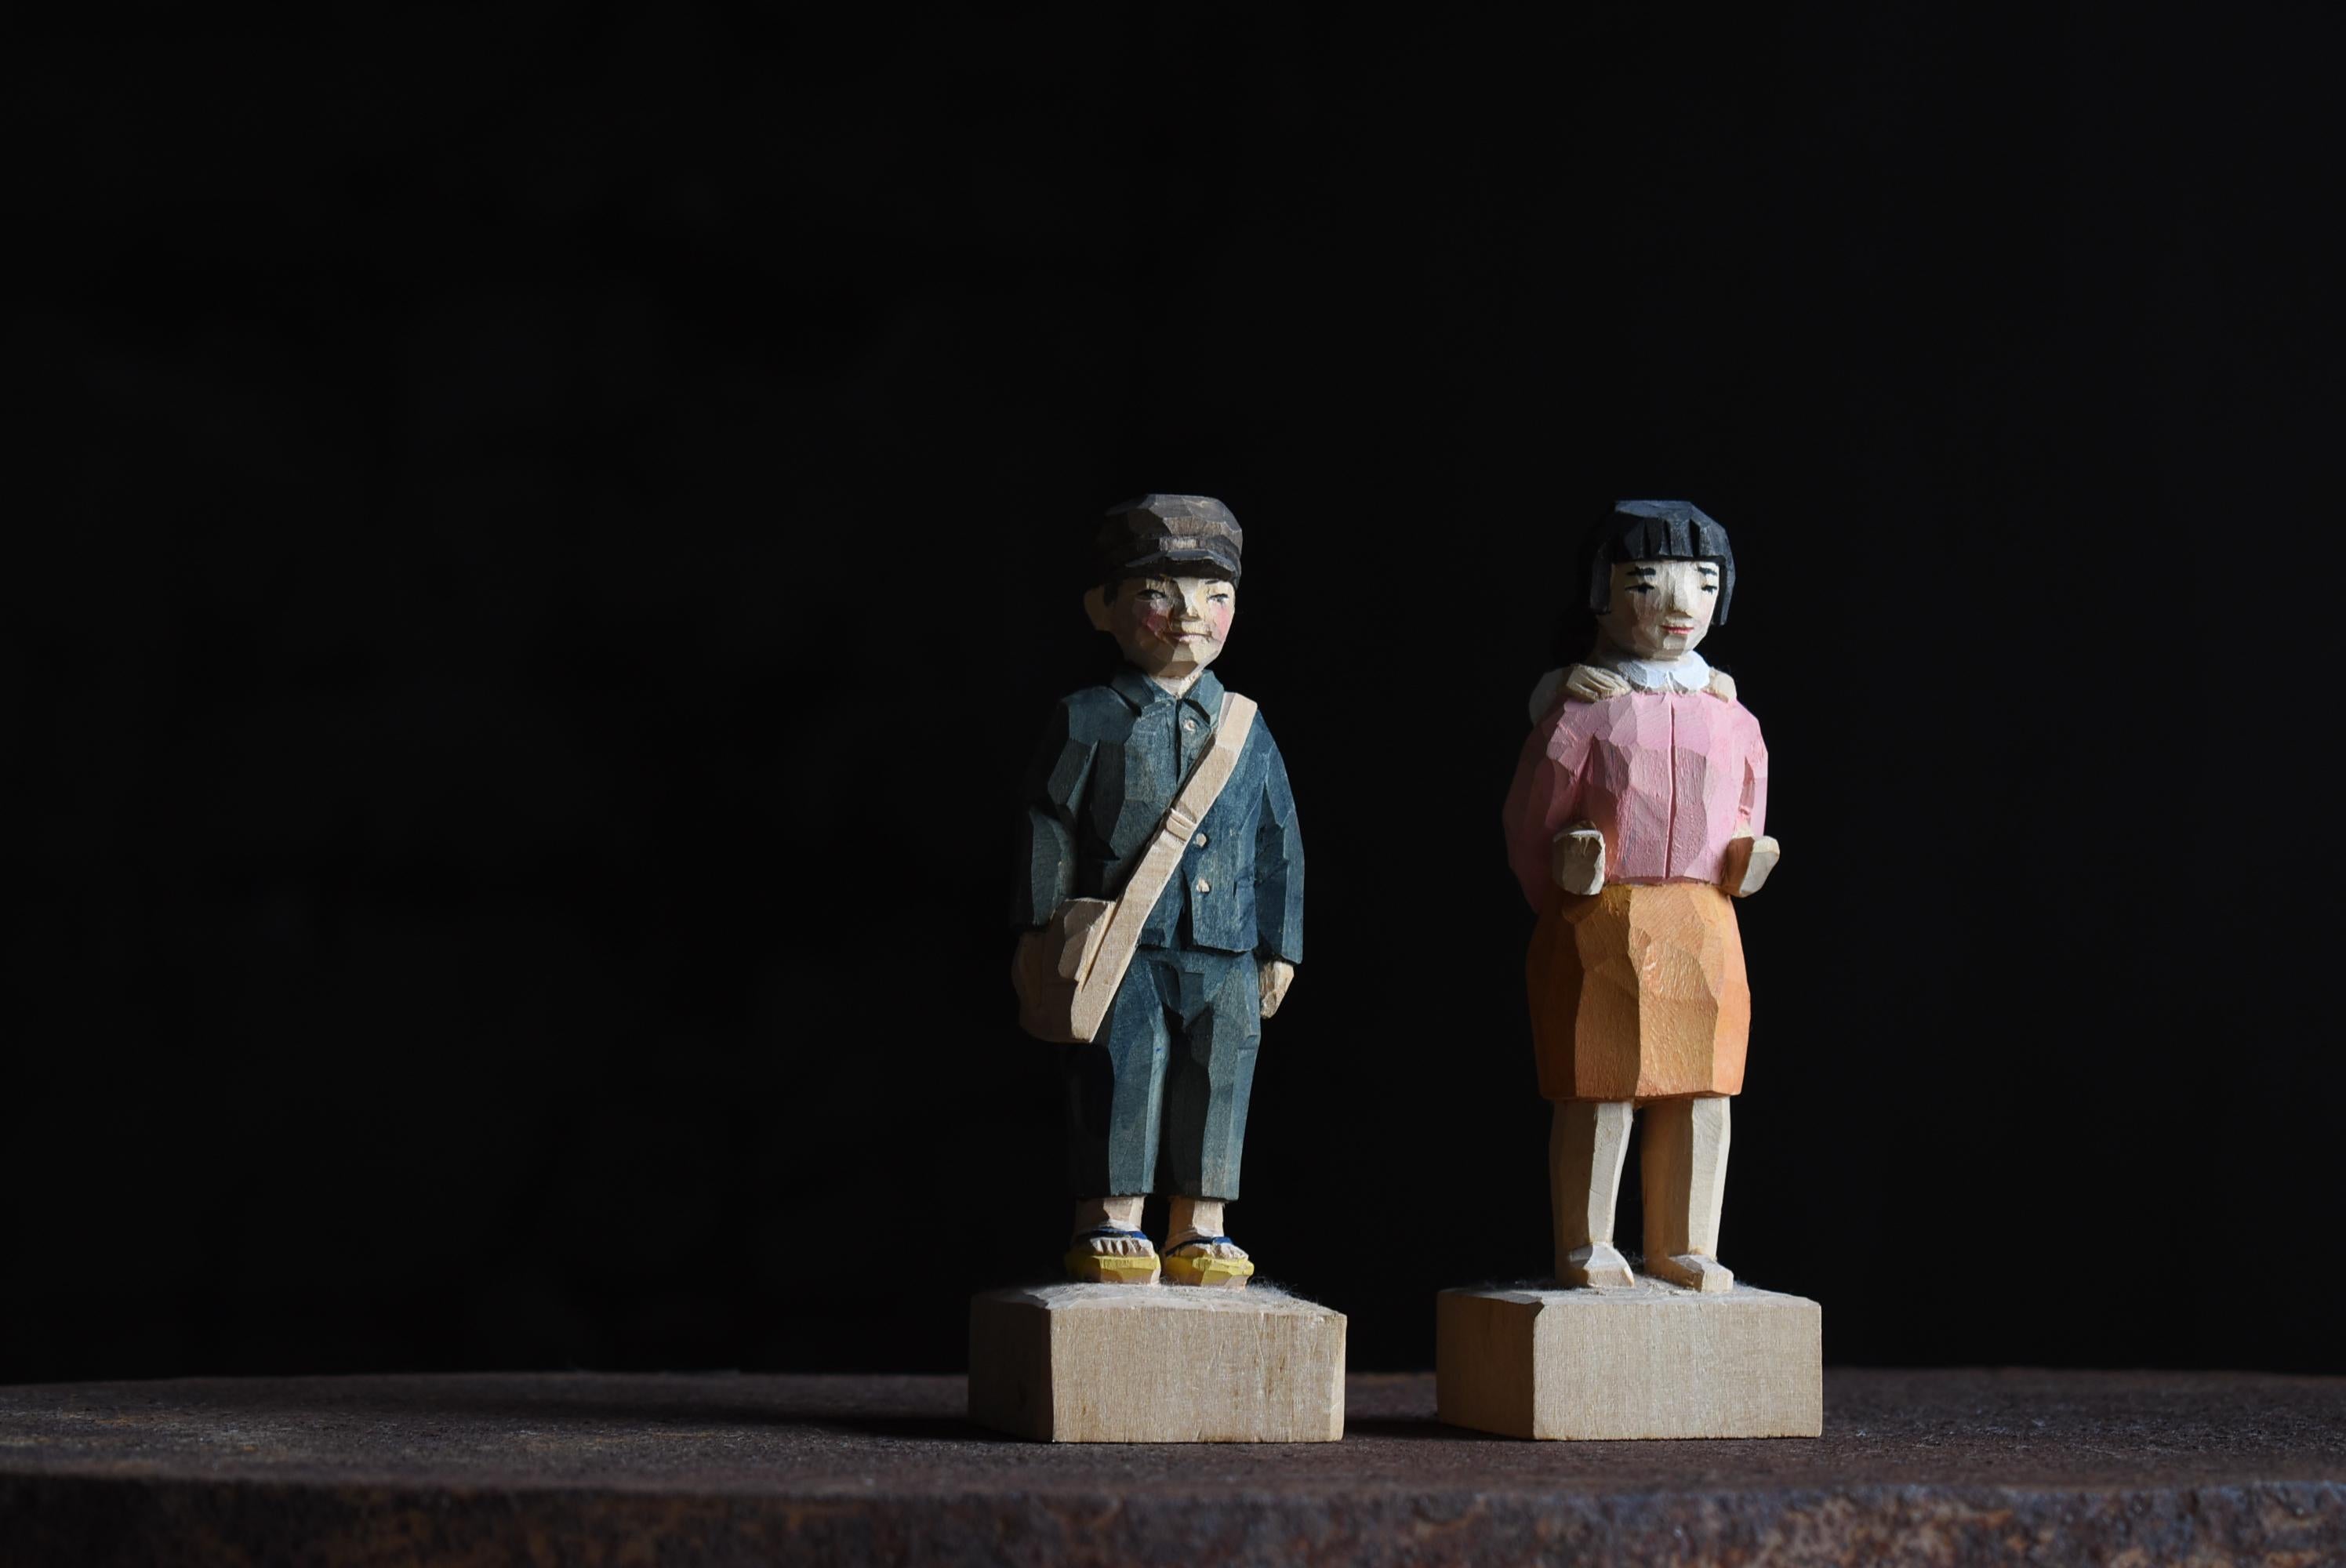 Il s'agit d'un ancien objet d'art populaire en bois sculpté fabriqué au Japon.
Ils sont inspirés des enfants japonais de la guerre.
Il s'agit d'une sculpture en bois datant du milieu de la période Shoha (années 1940-1960).

La sculpture est